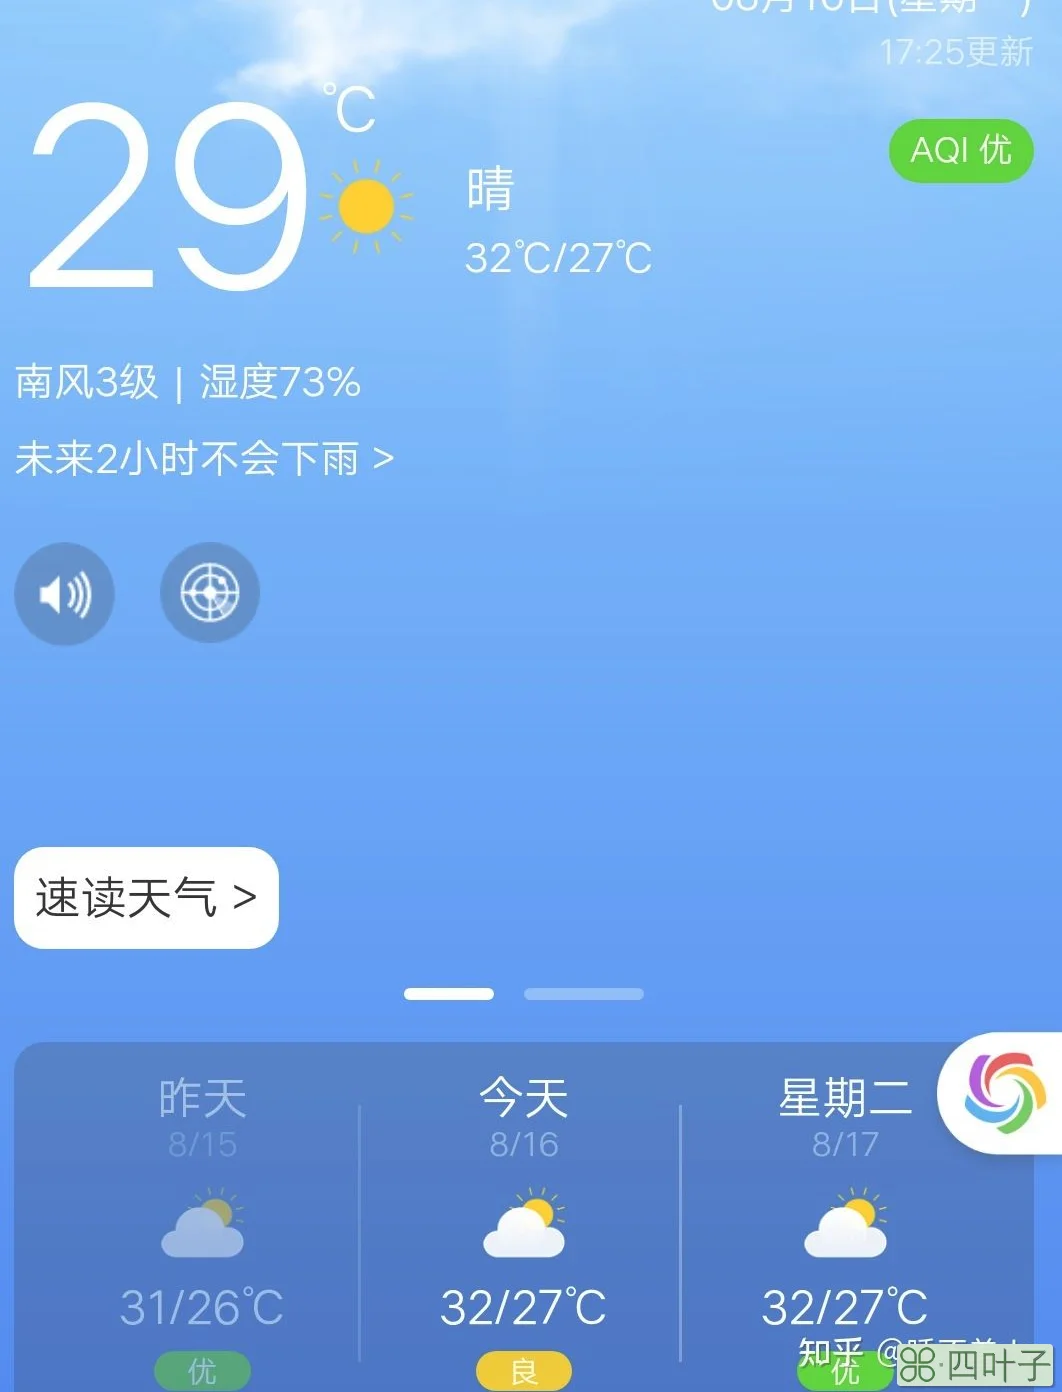 北京明日天气预报详情北京明日天气预报查询